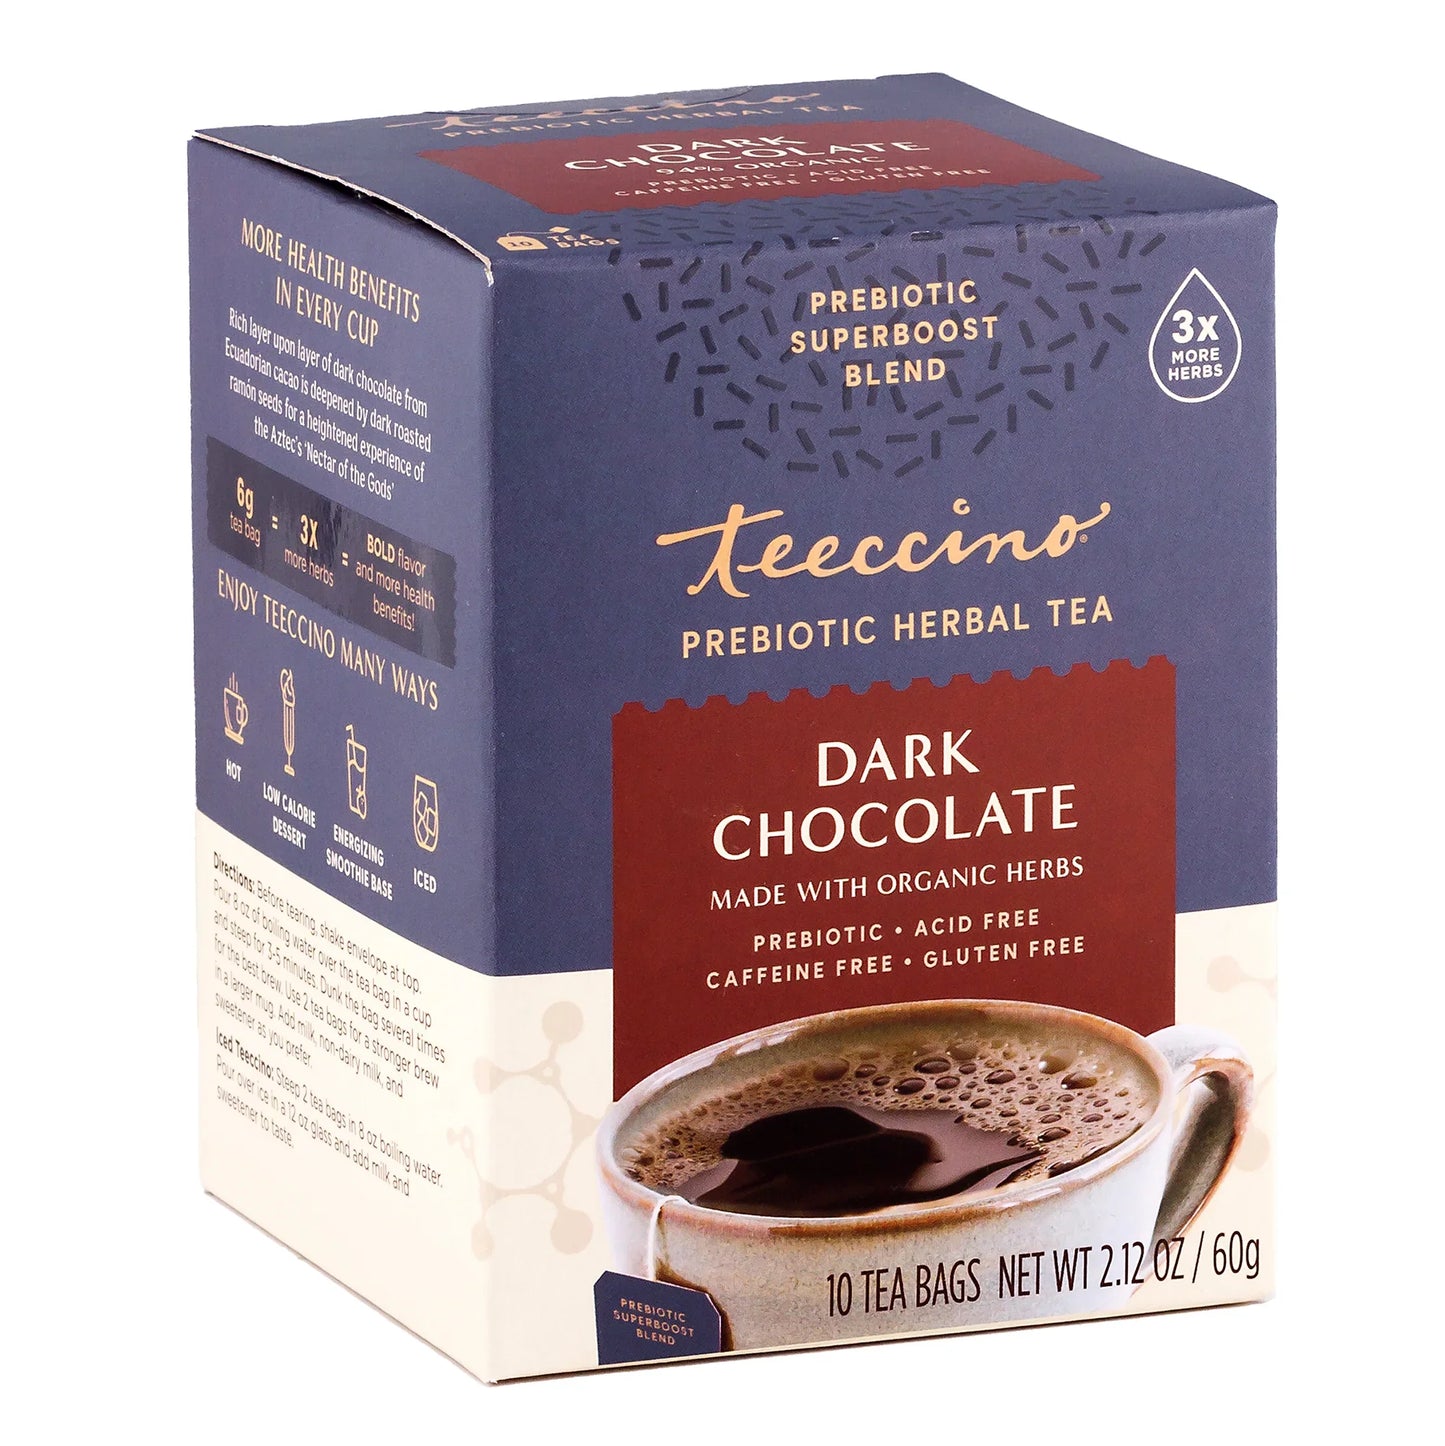 Dark Chocolate Prebiotic SuperBoost Herbal Tea